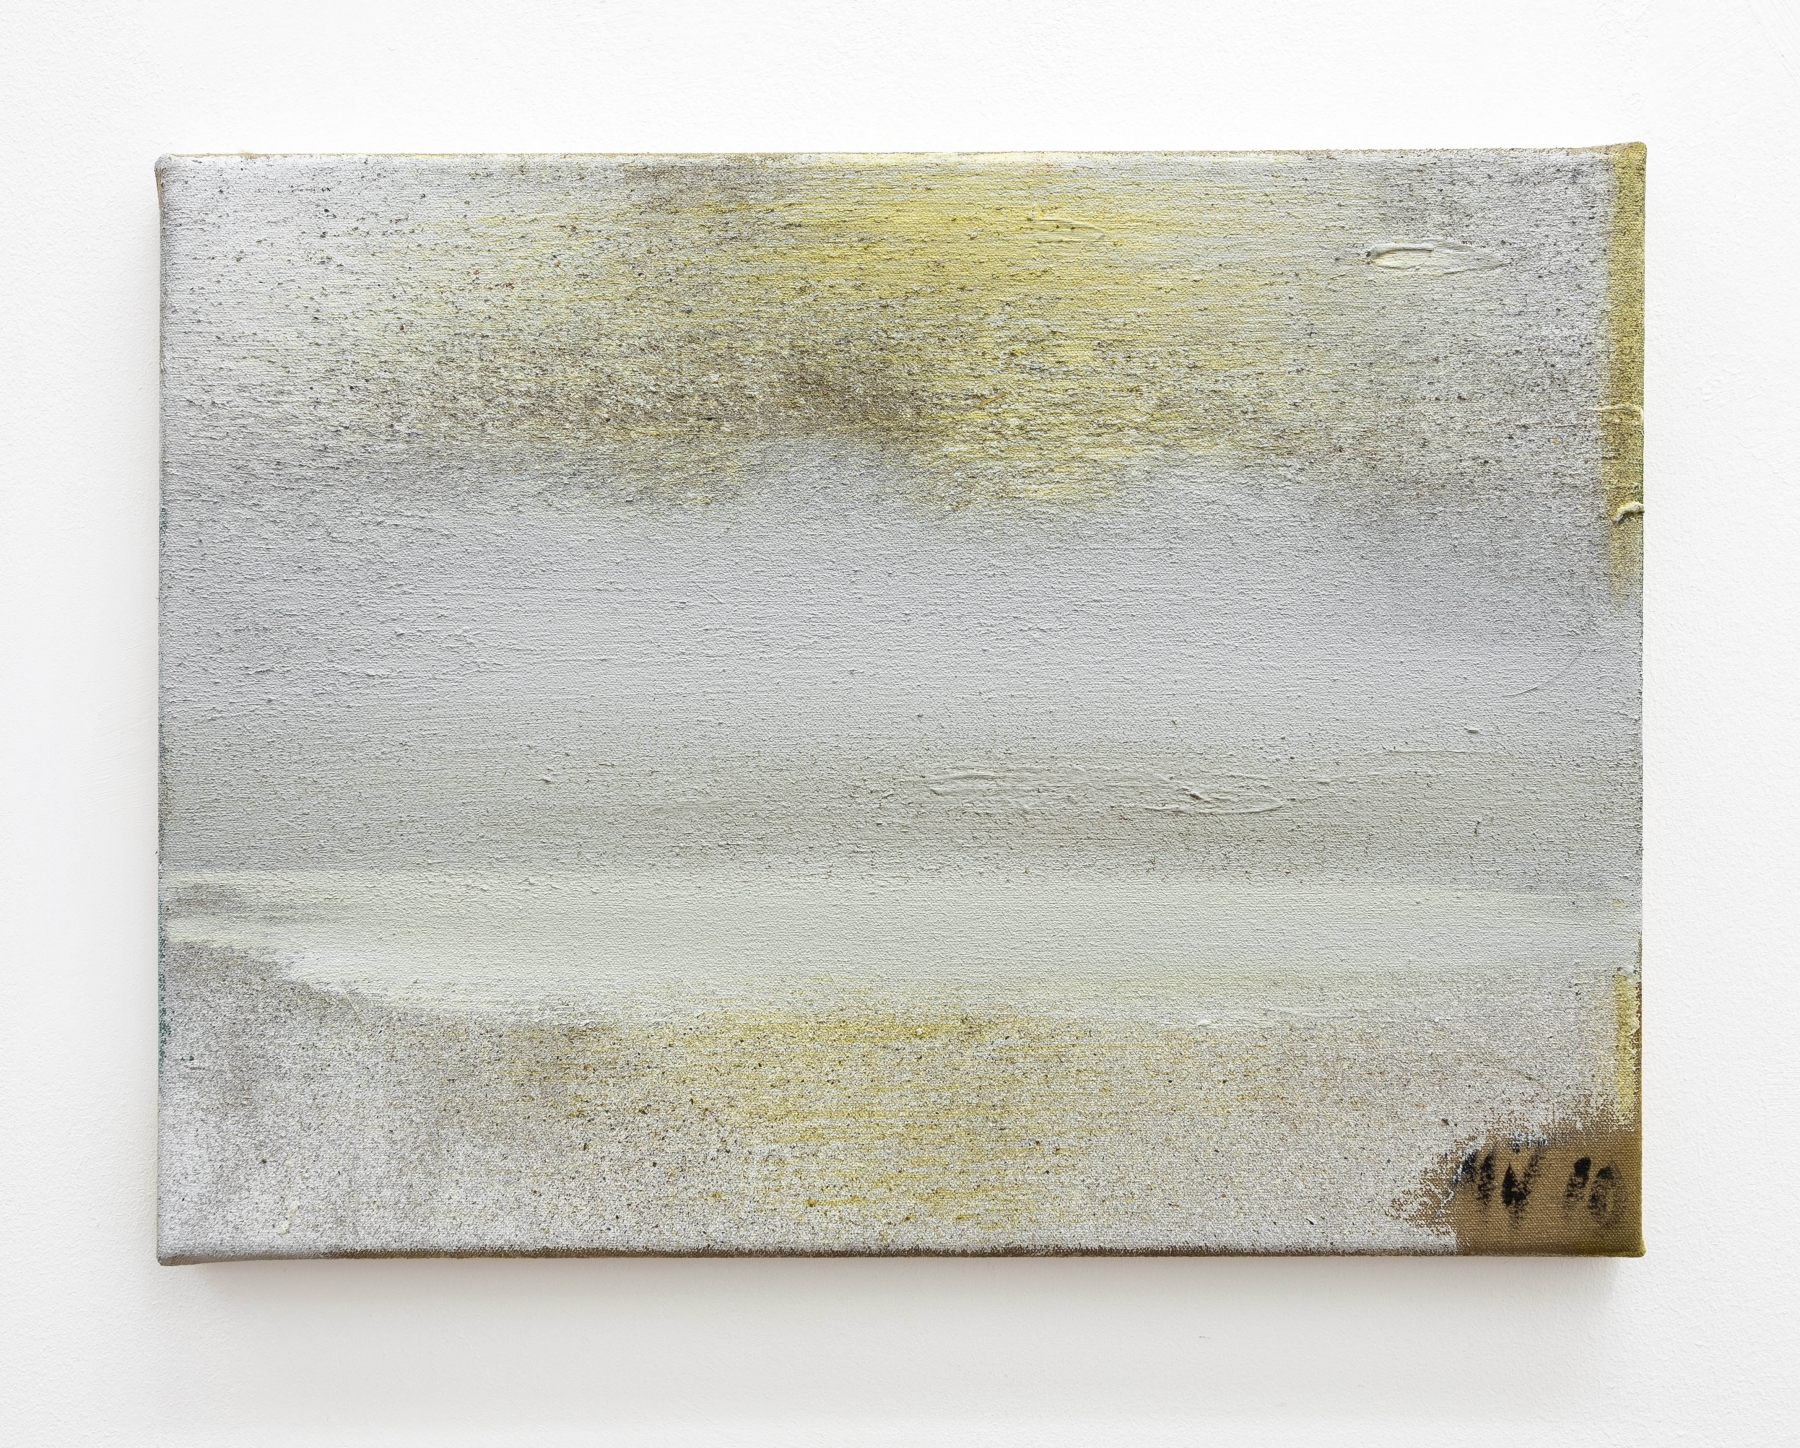 Merlin James&nbsp;
The Sea, 2021
acrylic and ash on canvas
30.5 x 40.5 cm / 12 x 15.9 in &nbsp;&nbsp;